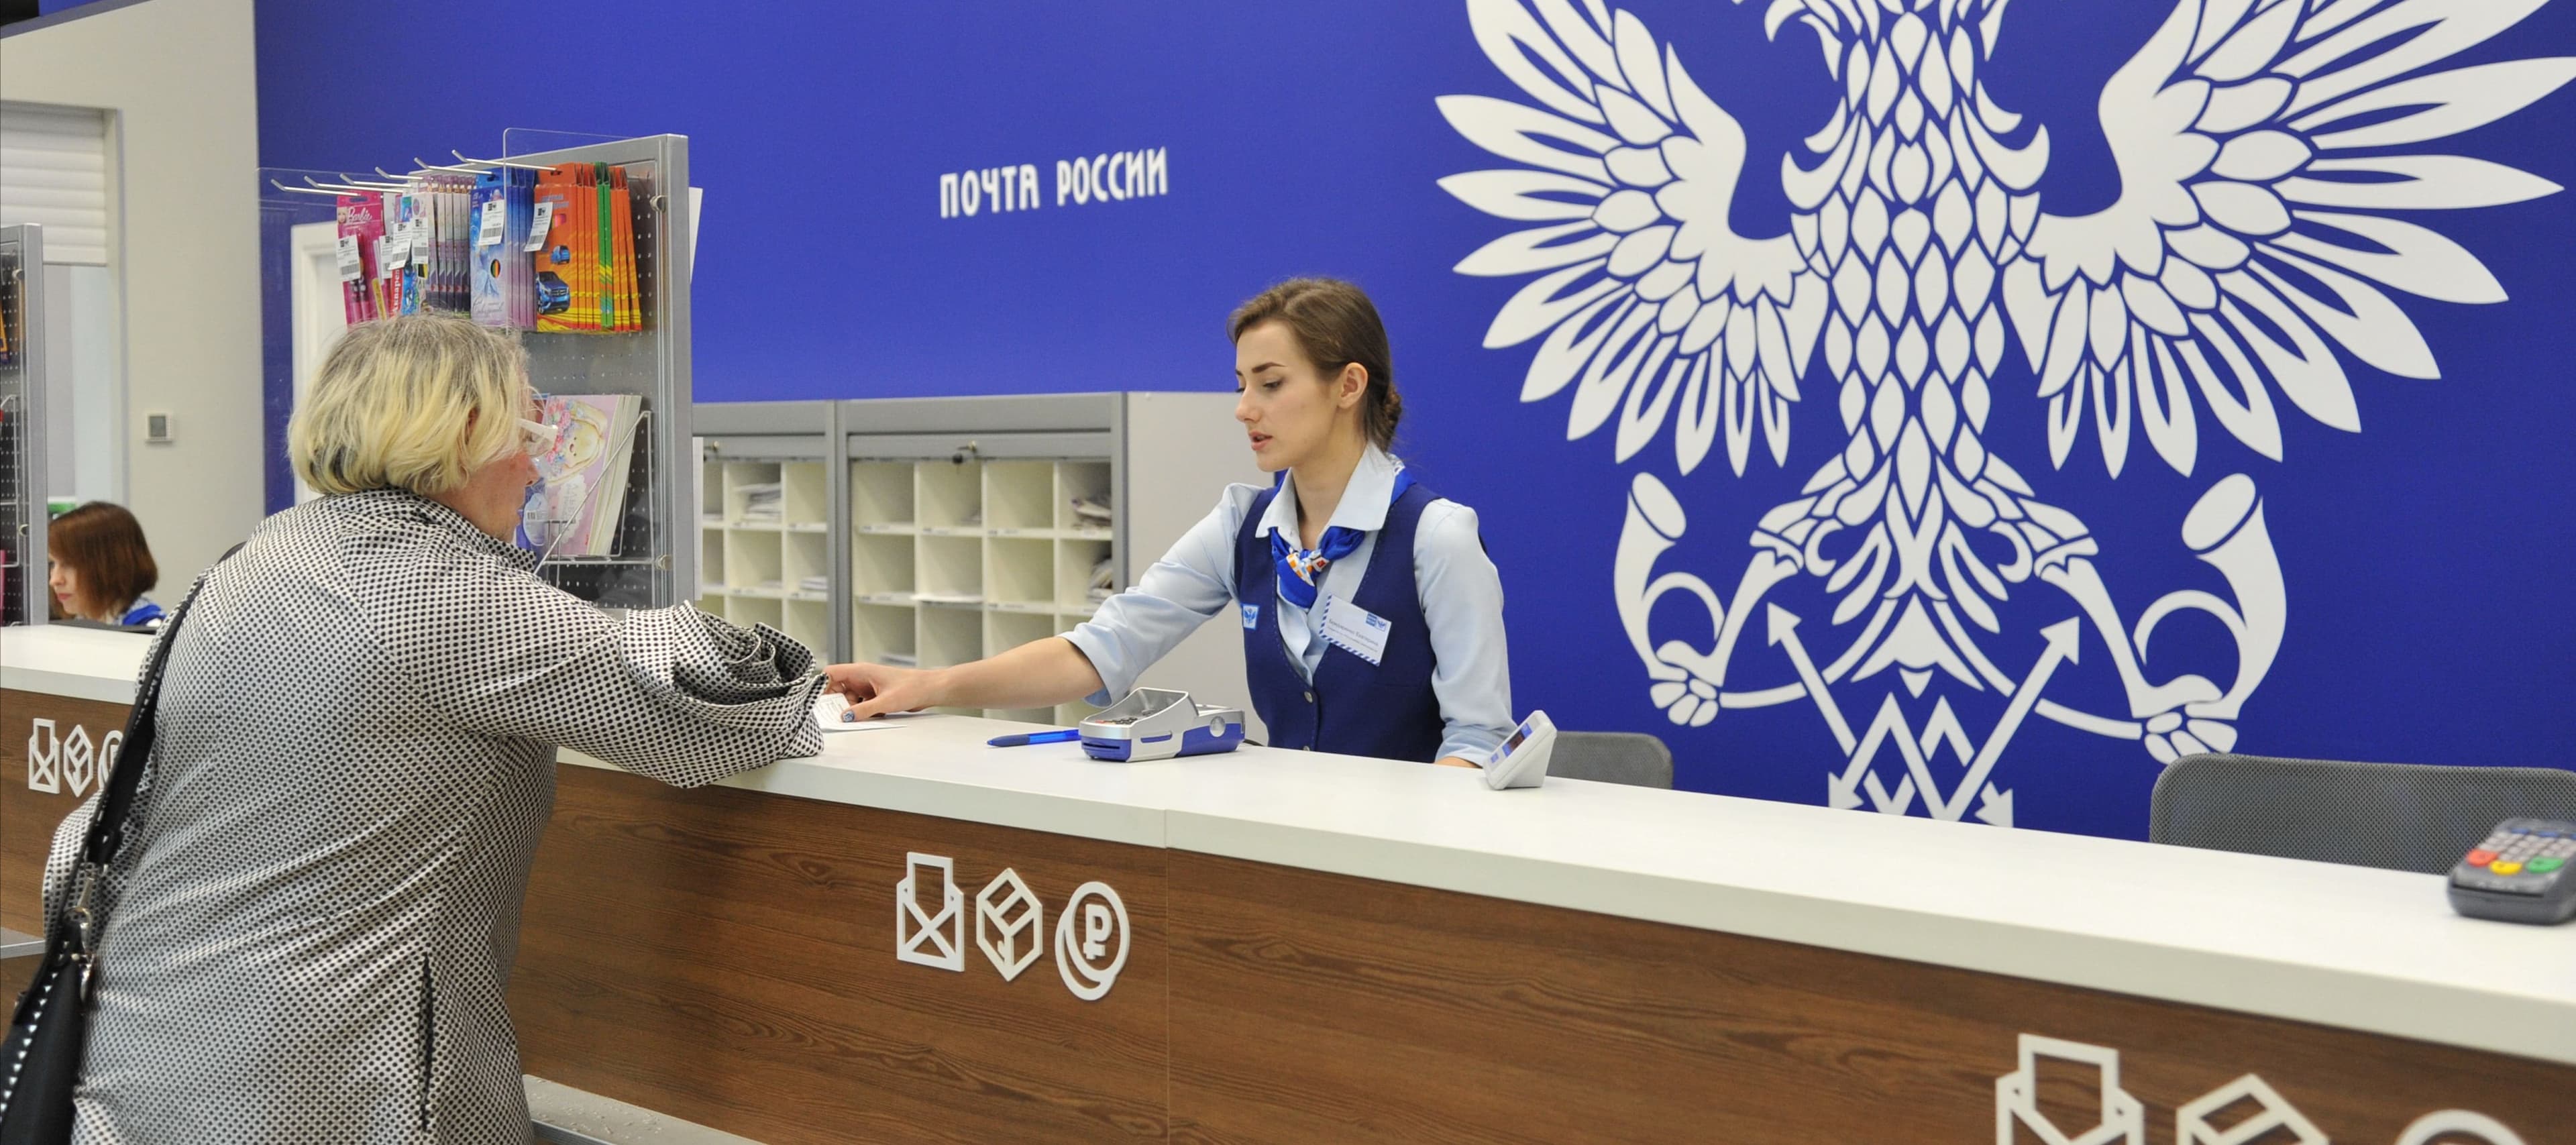 Фото новости: "«Почта России» в январе – июне сократила убыток почти втрое"